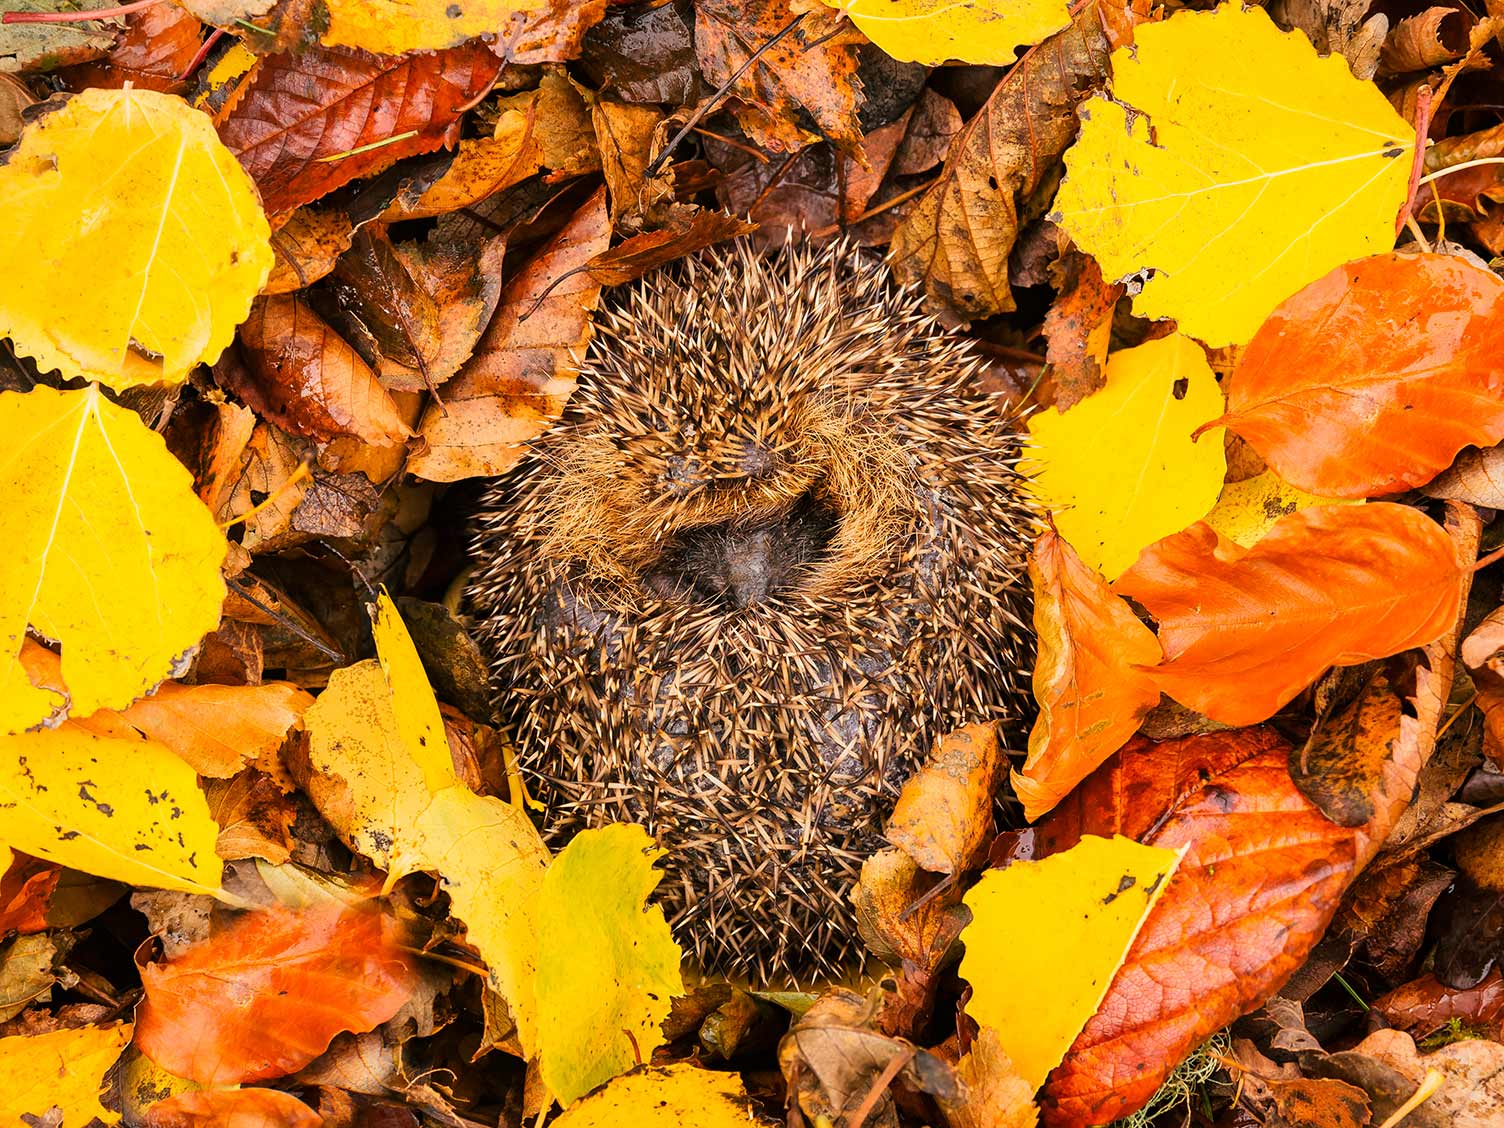 Hibernating hedgehog in leaves